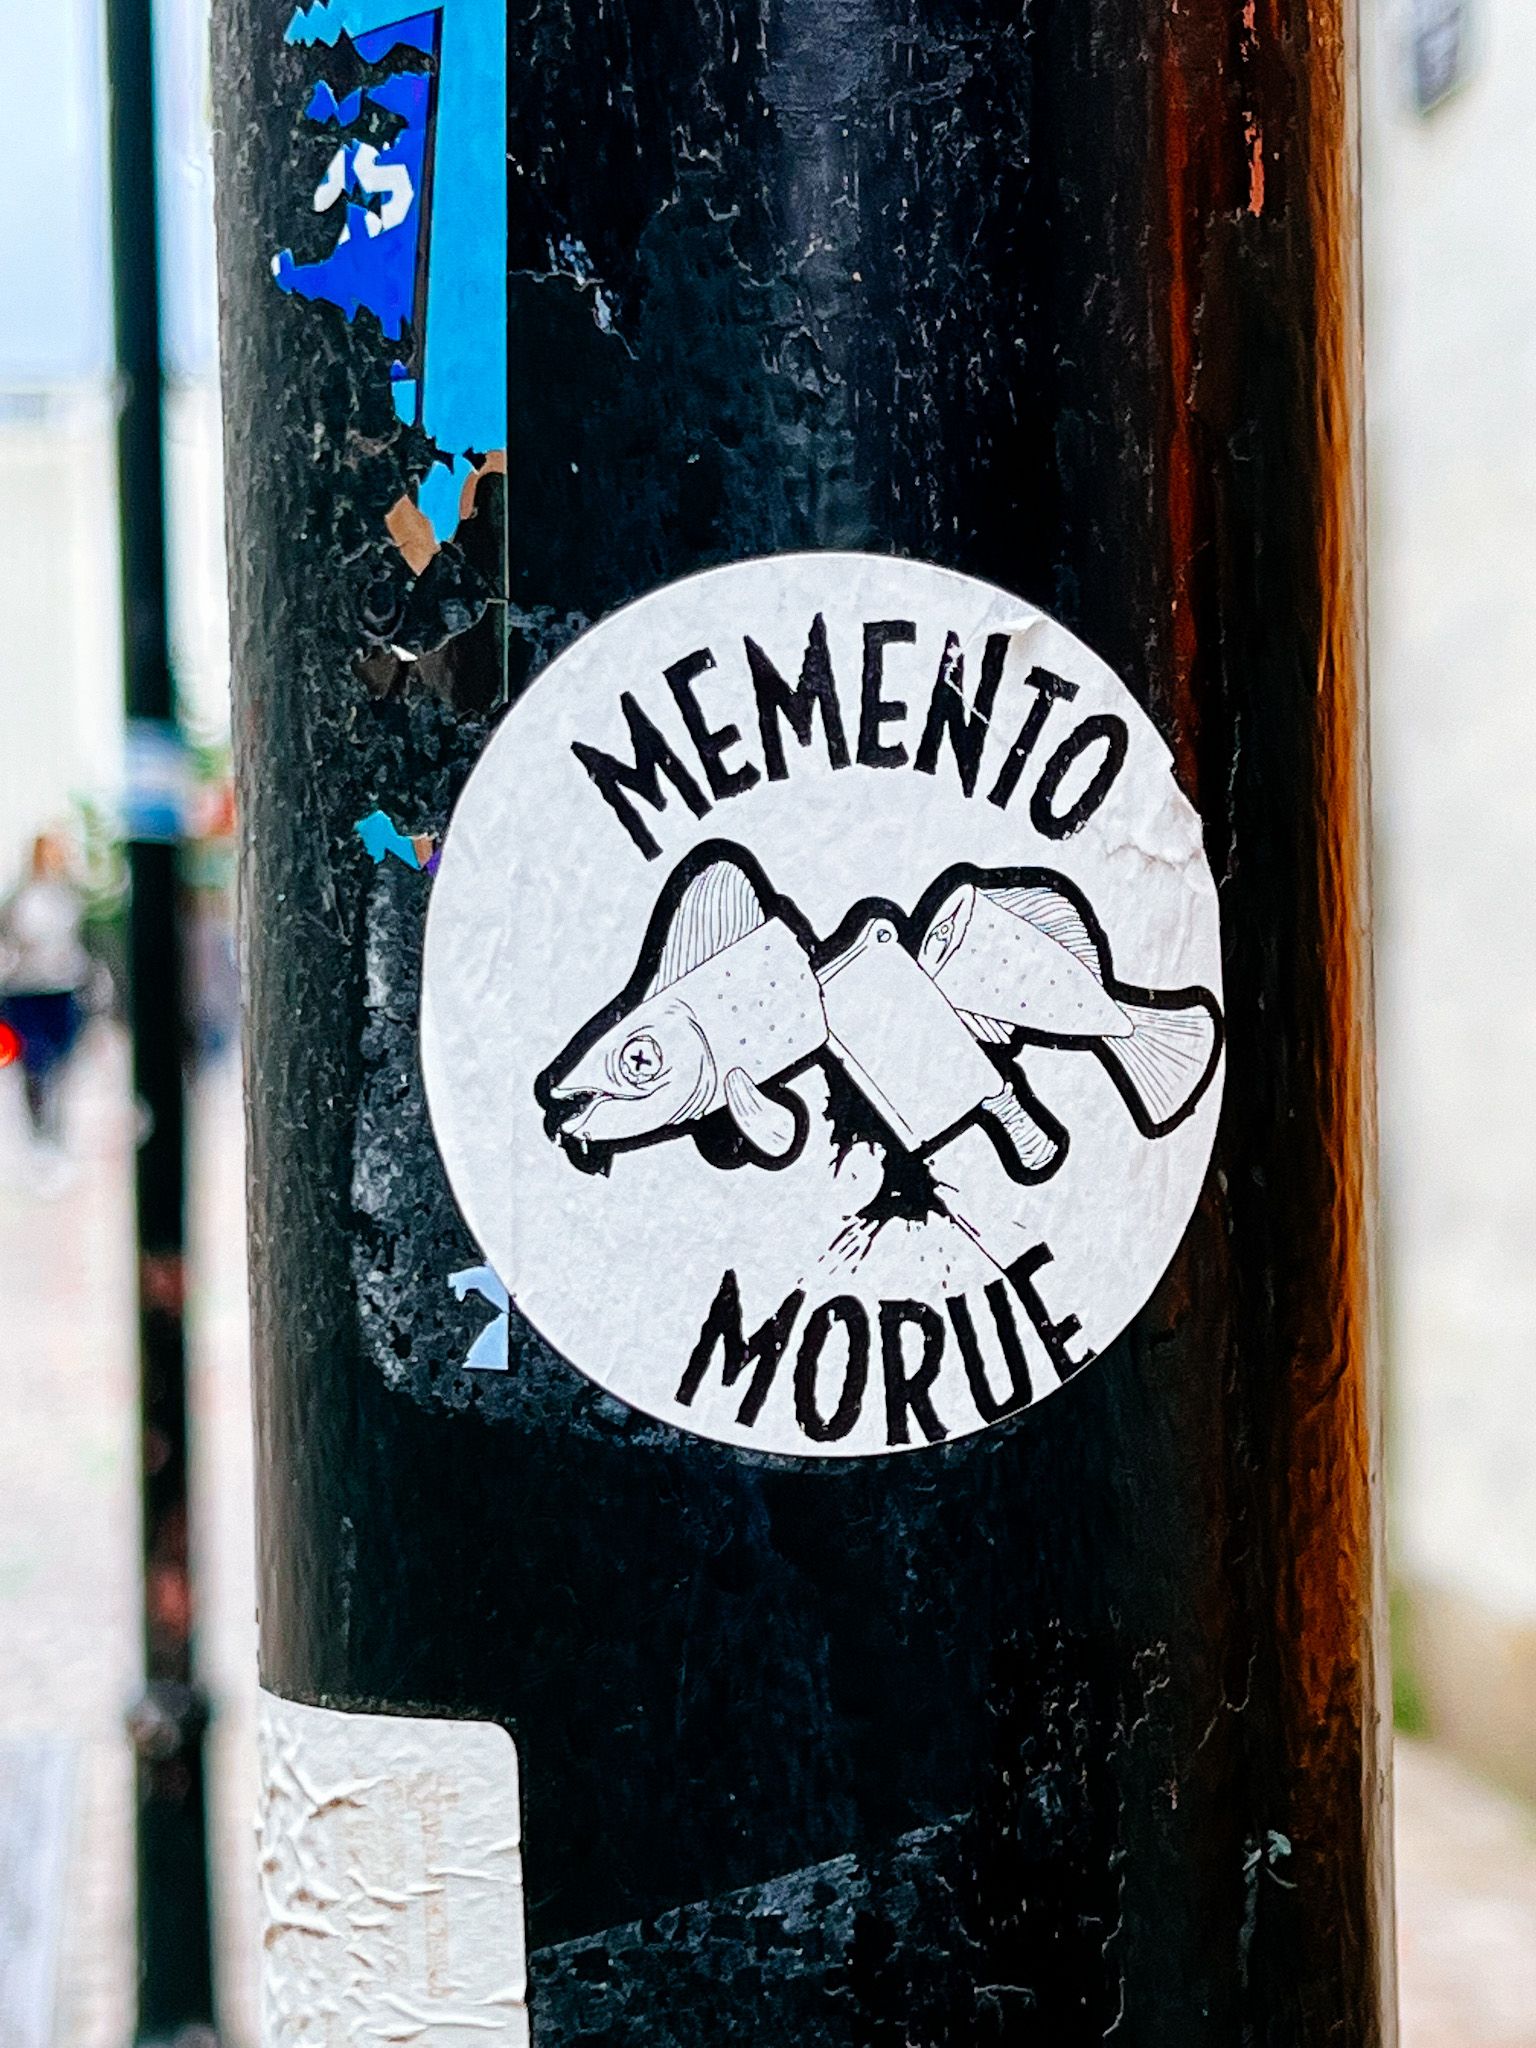 mementoMorue